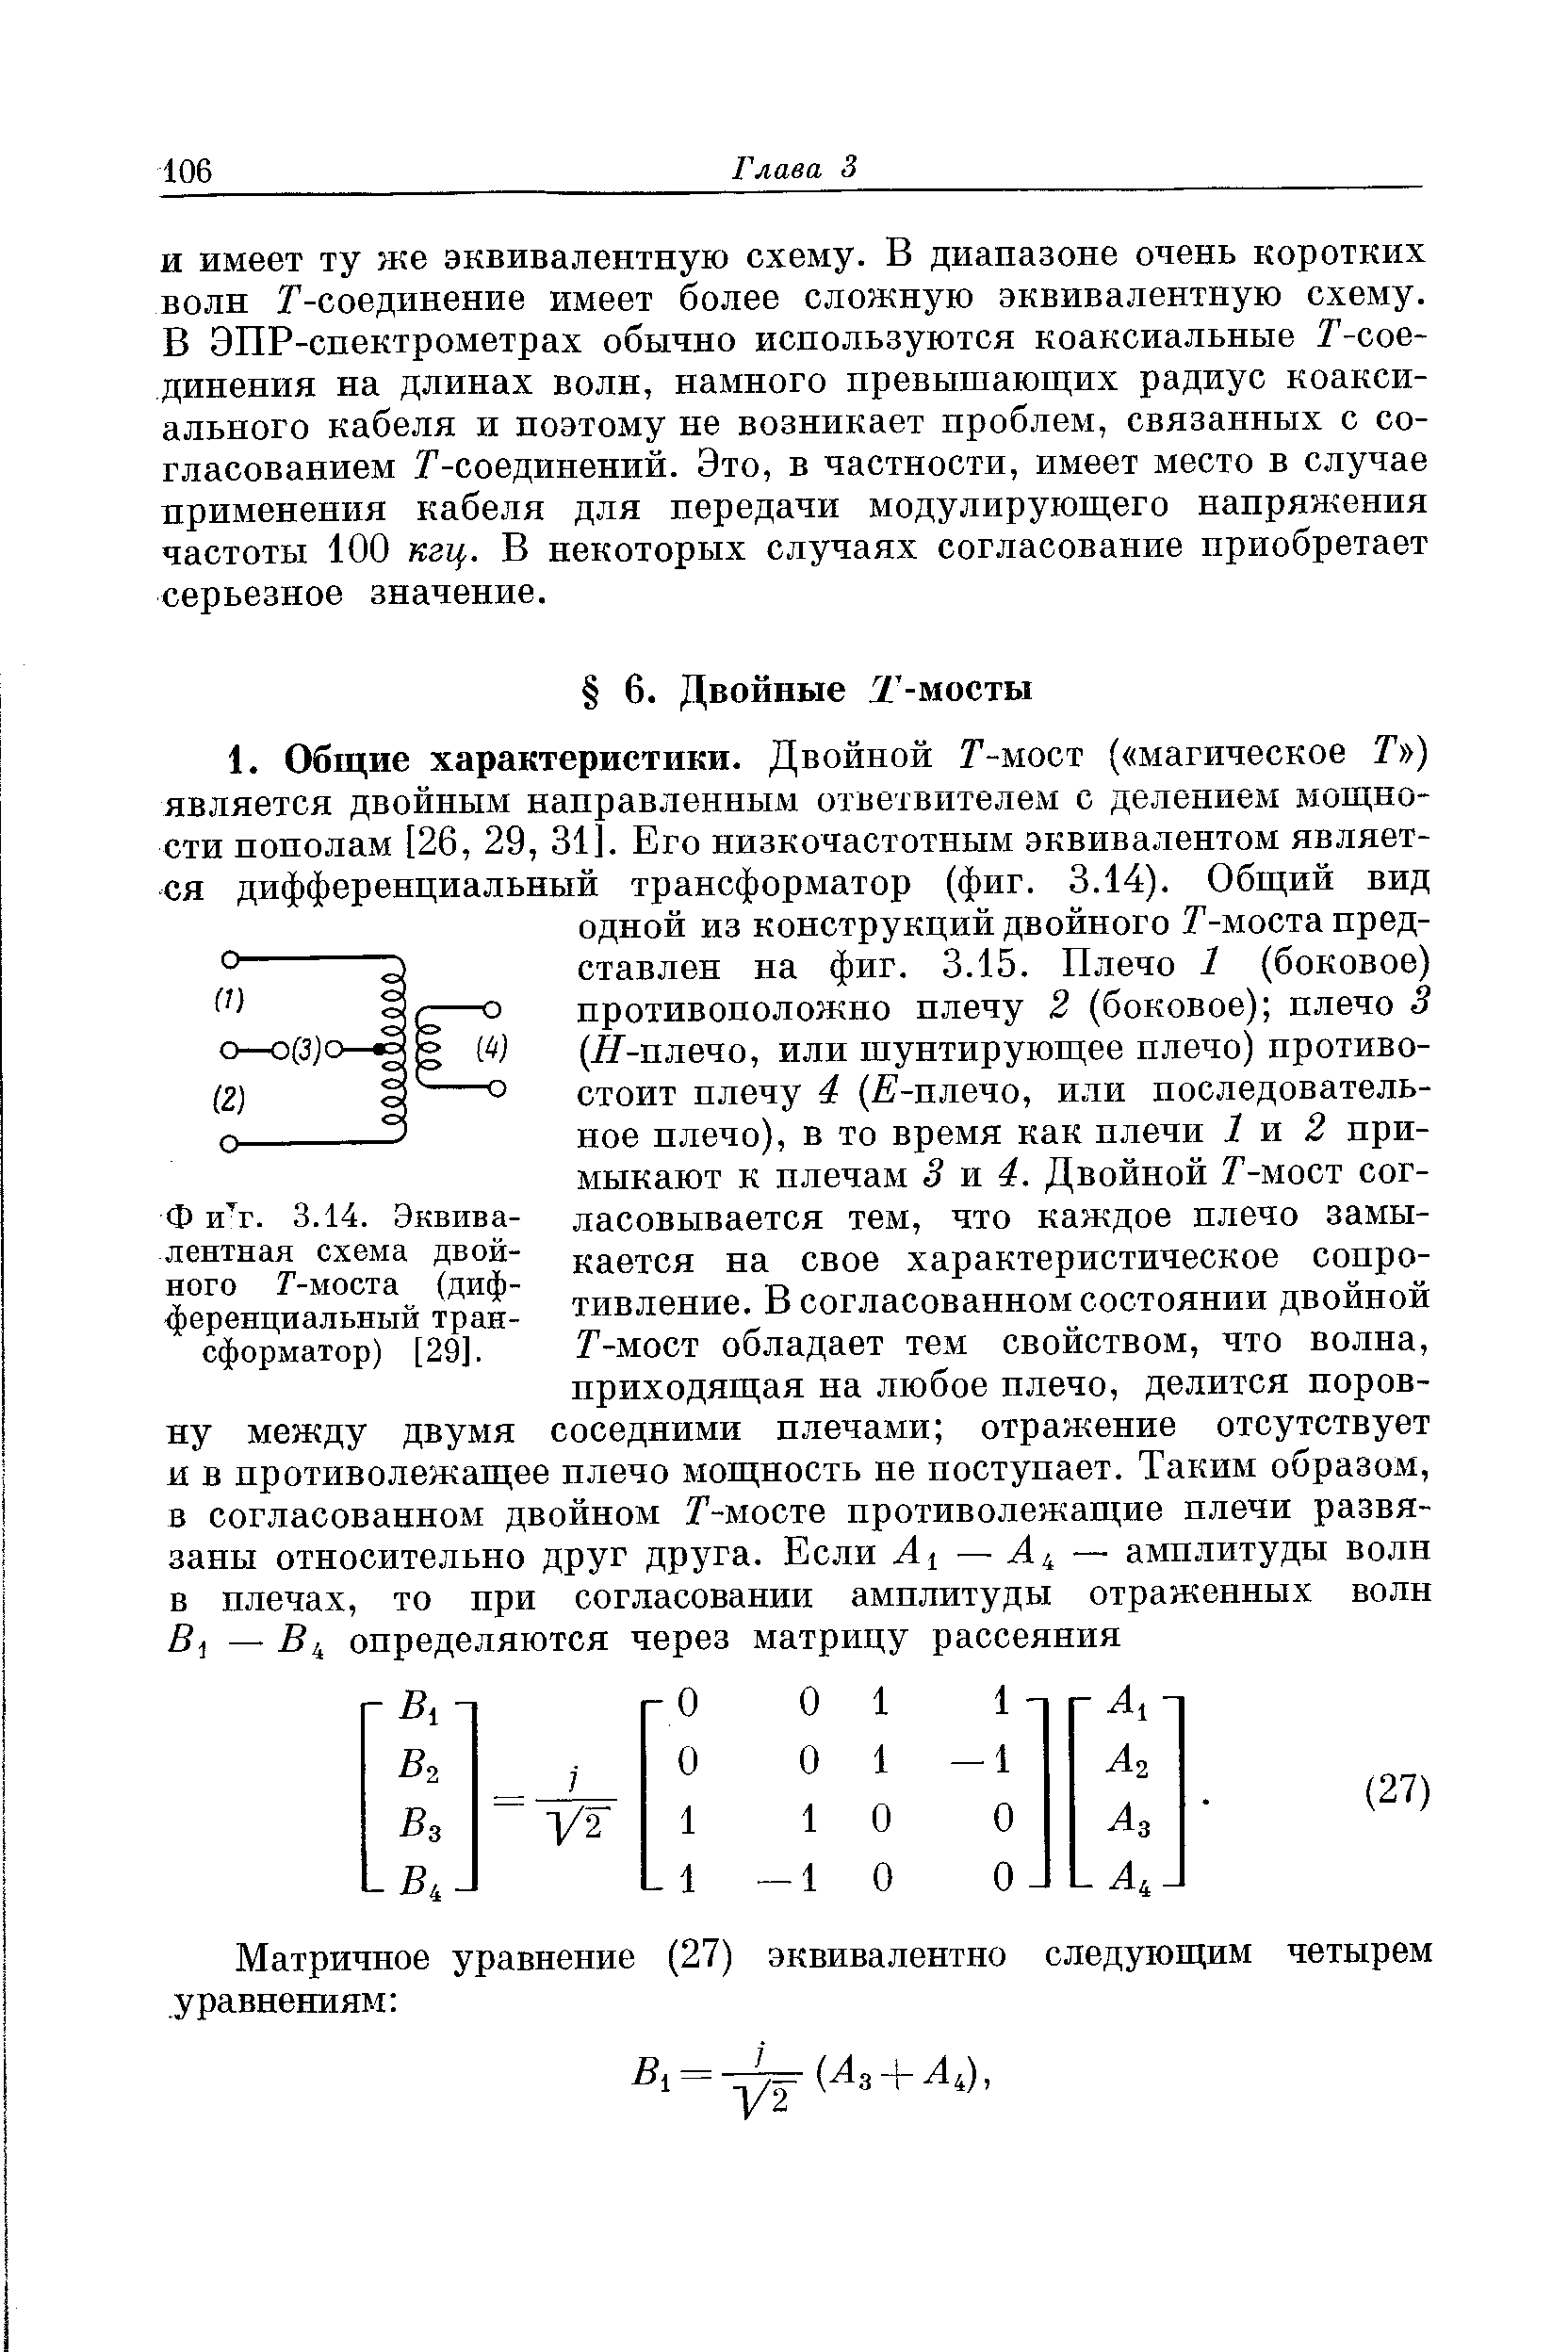 Эквивалентная схема двойного Г-моста (дифференциальный трансформатор) [29].